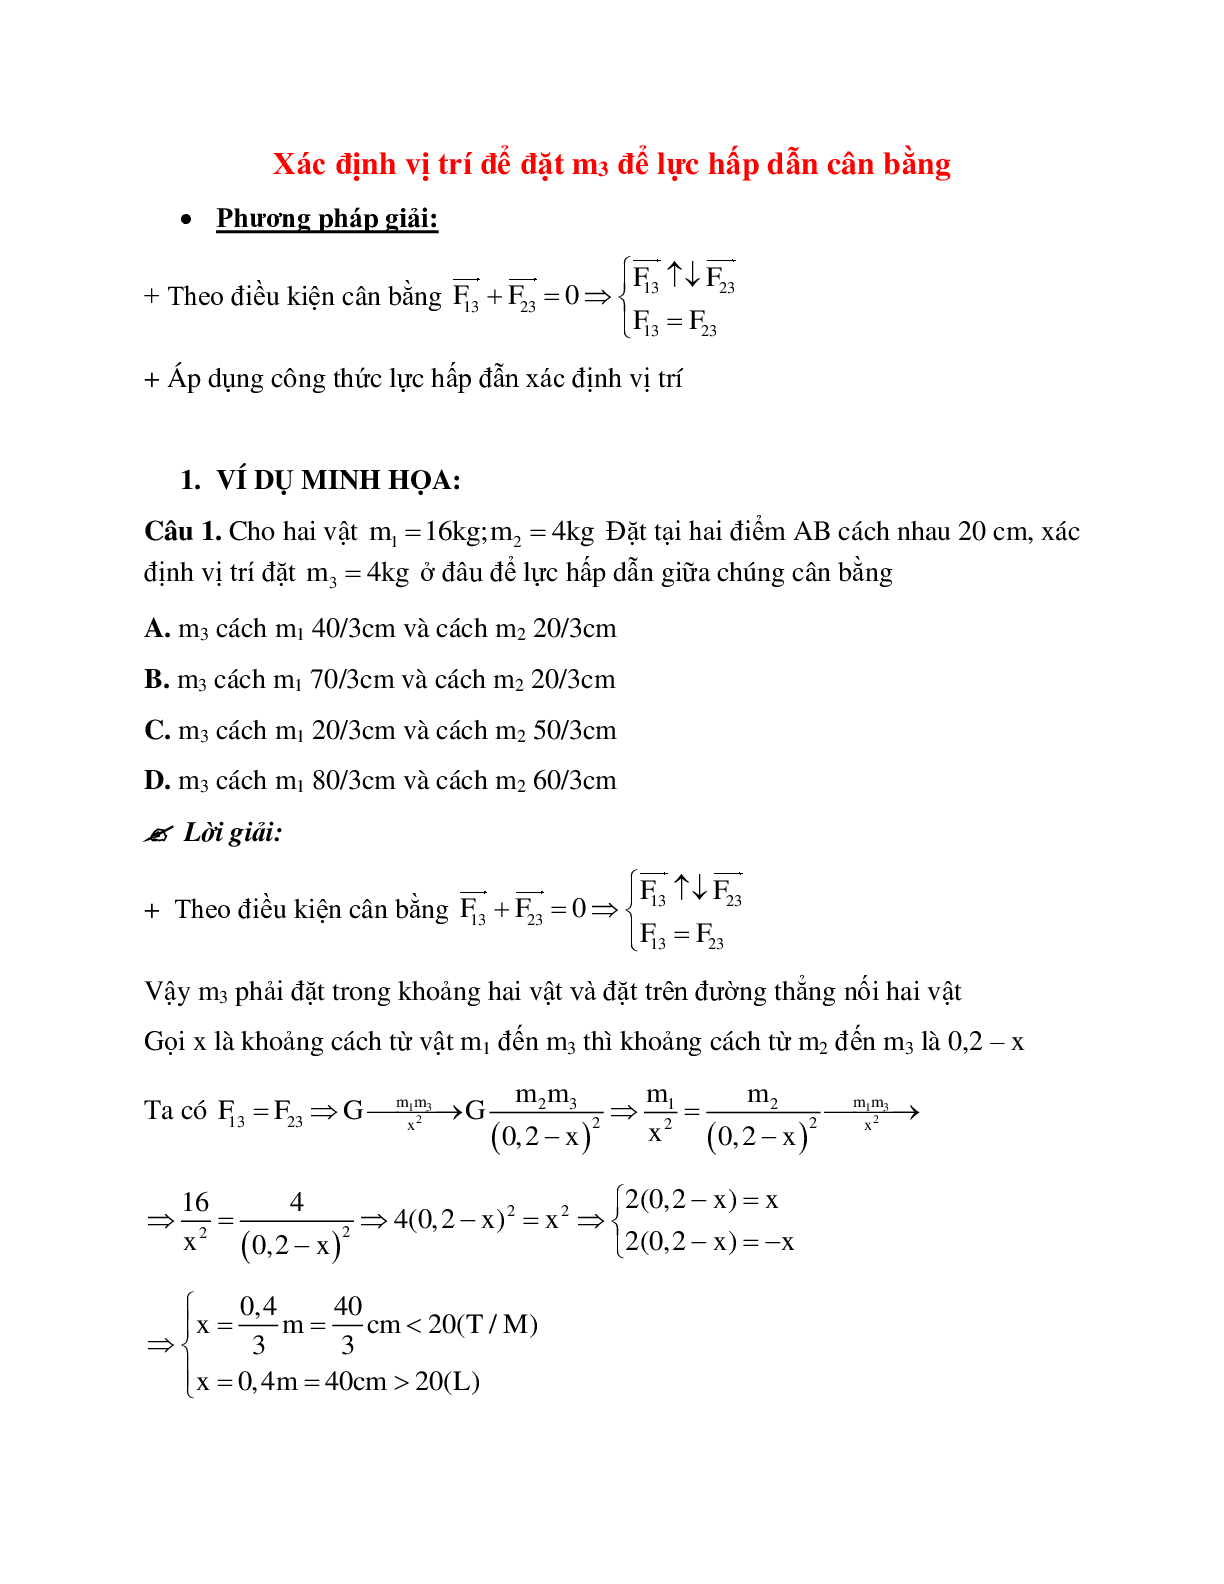 Phương pháp giải và bài tập về Xác định vị trí để đặt 3 để lực hấp dẫn cân bằng (trang 1)